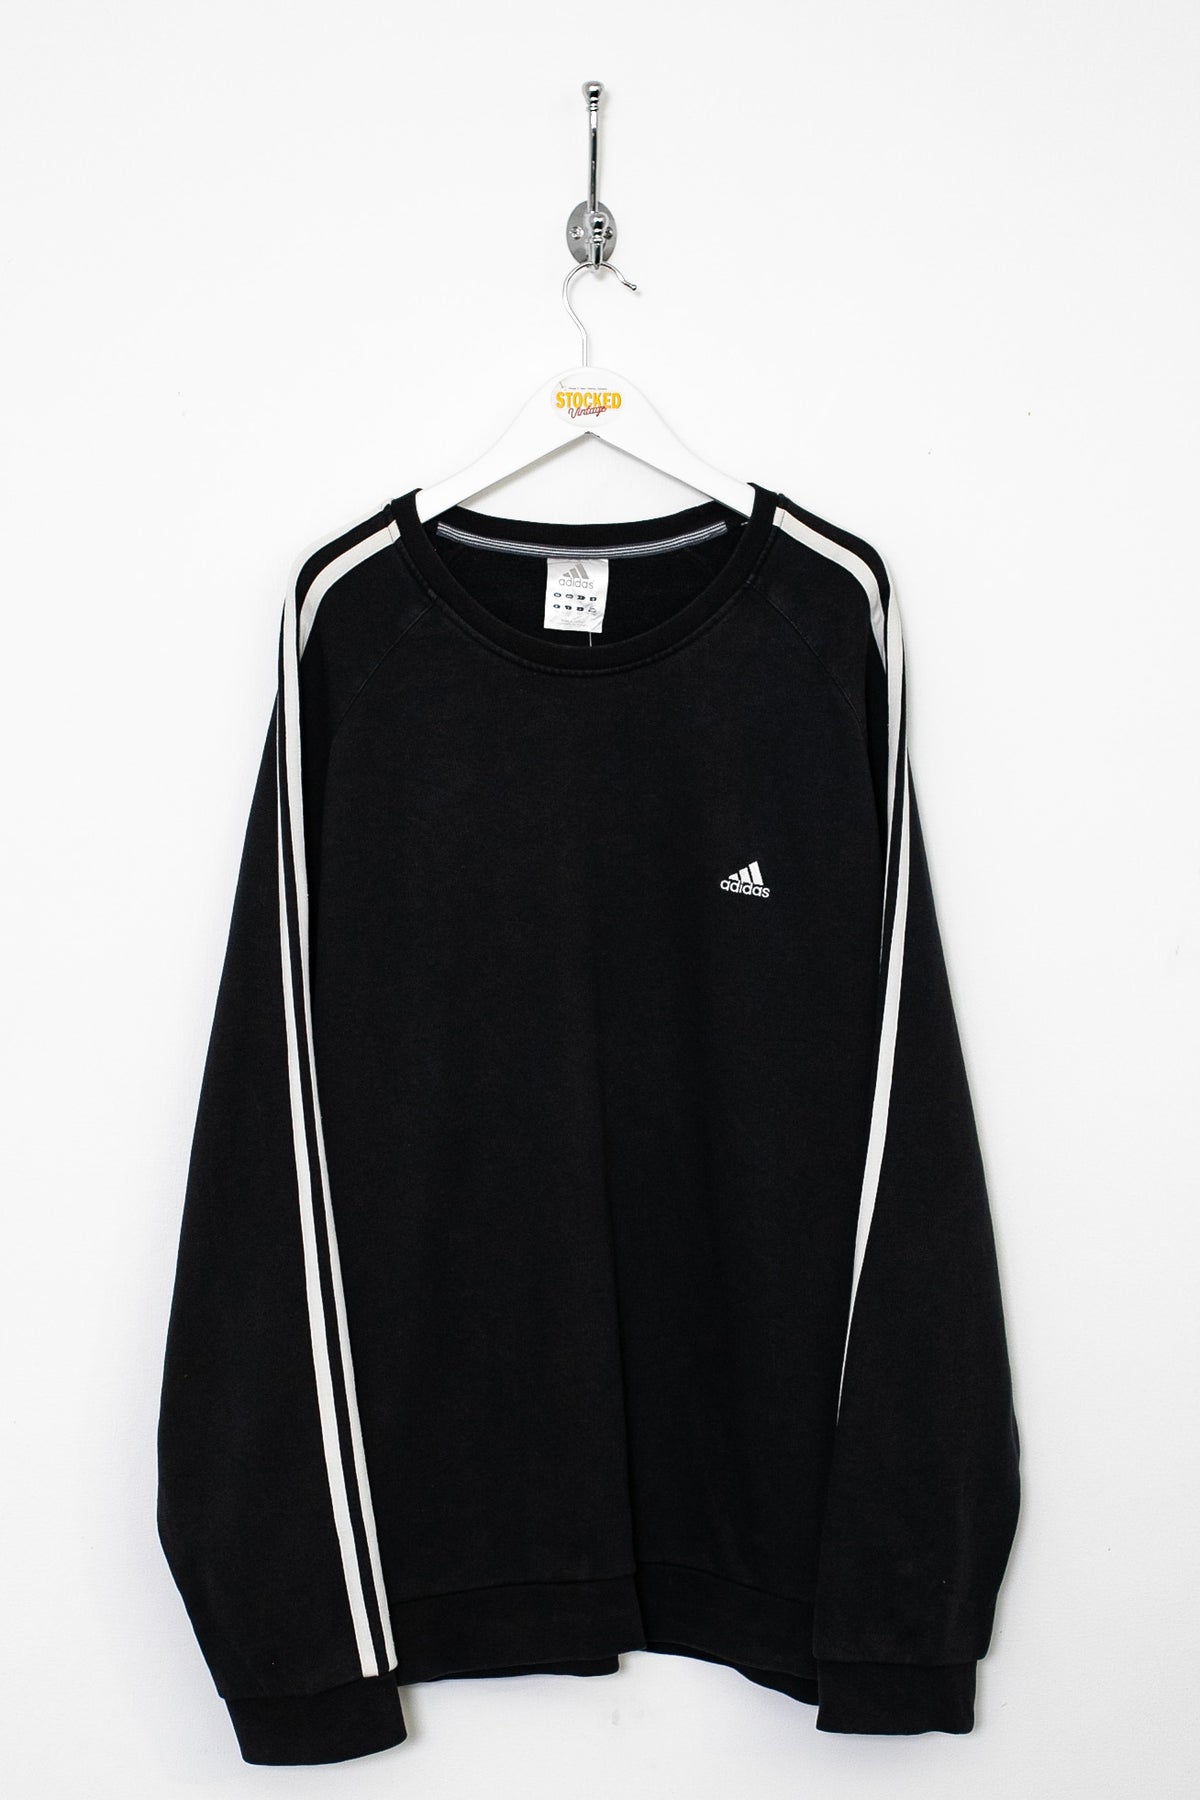 00s Adidas Sweatshirt (XL)